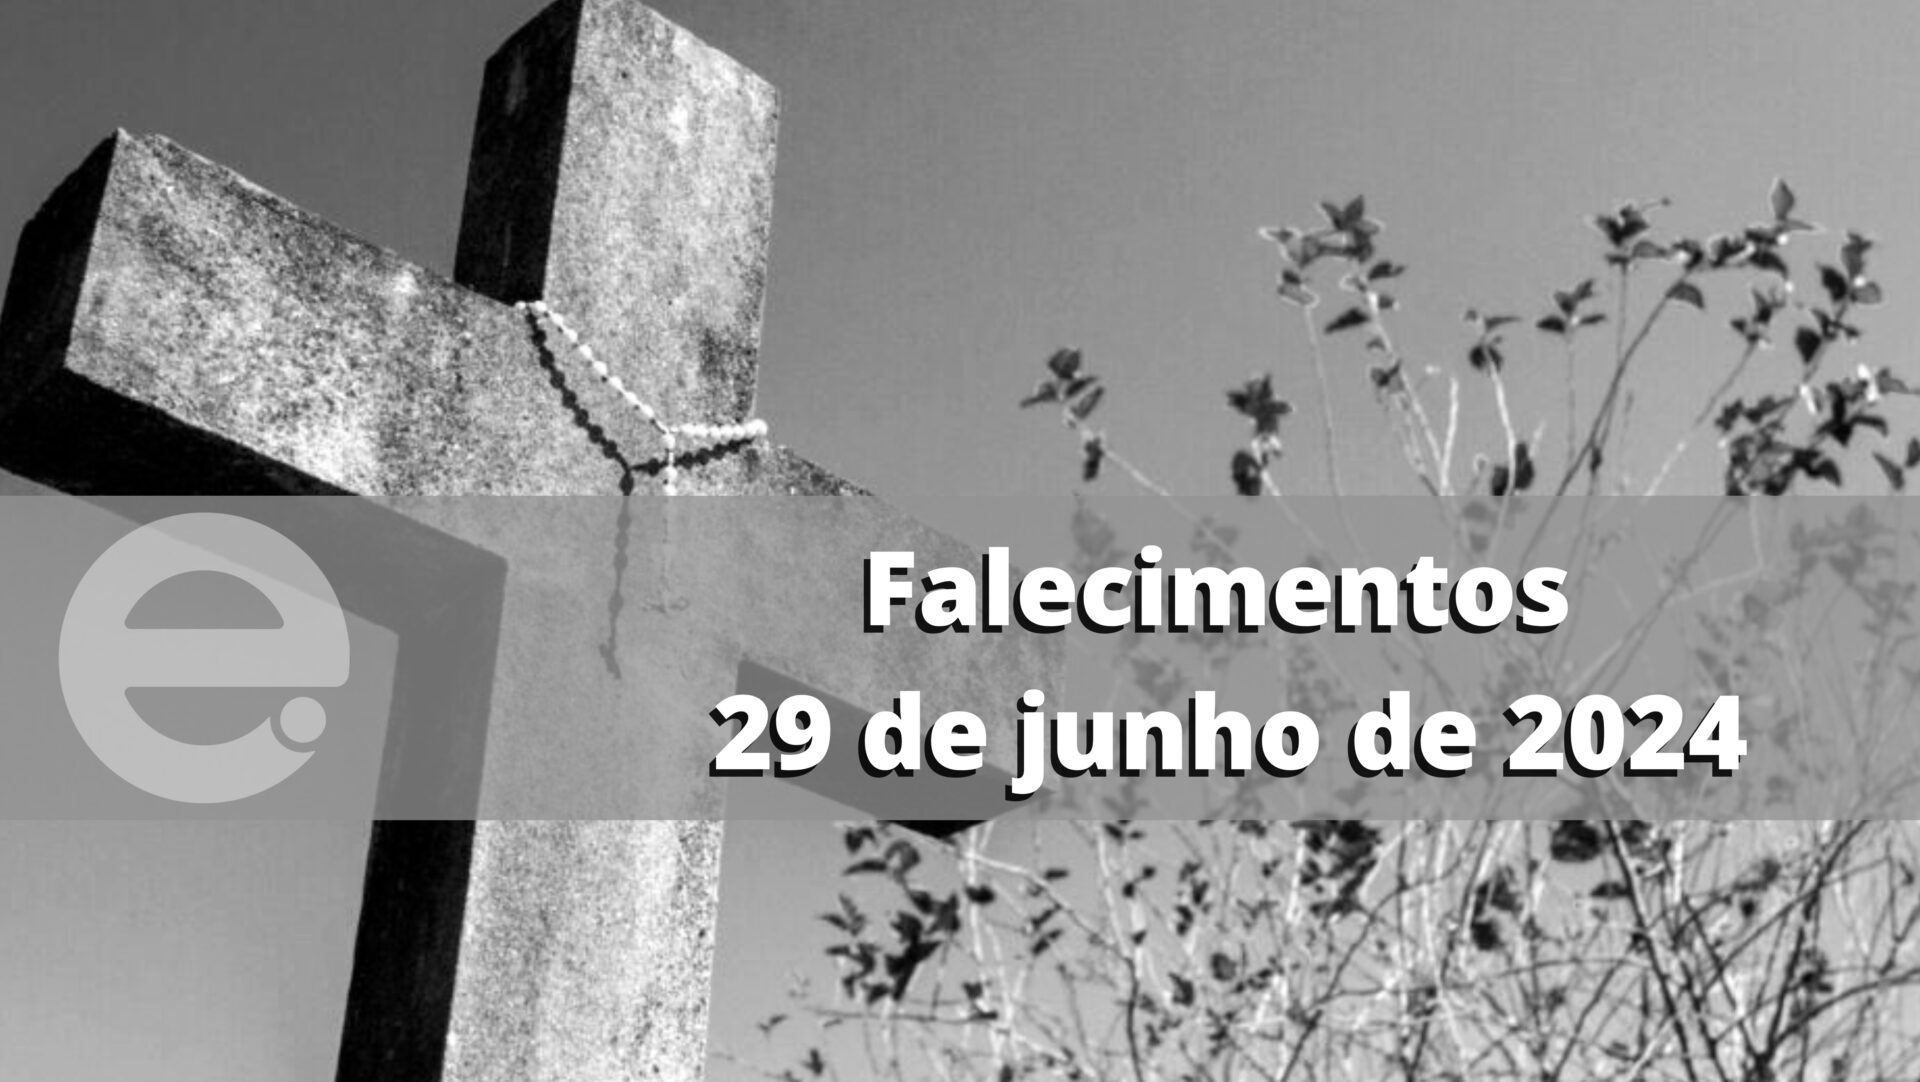 Confira os falecimentos deste sábado, 29 de junho de 2024, em Limeira